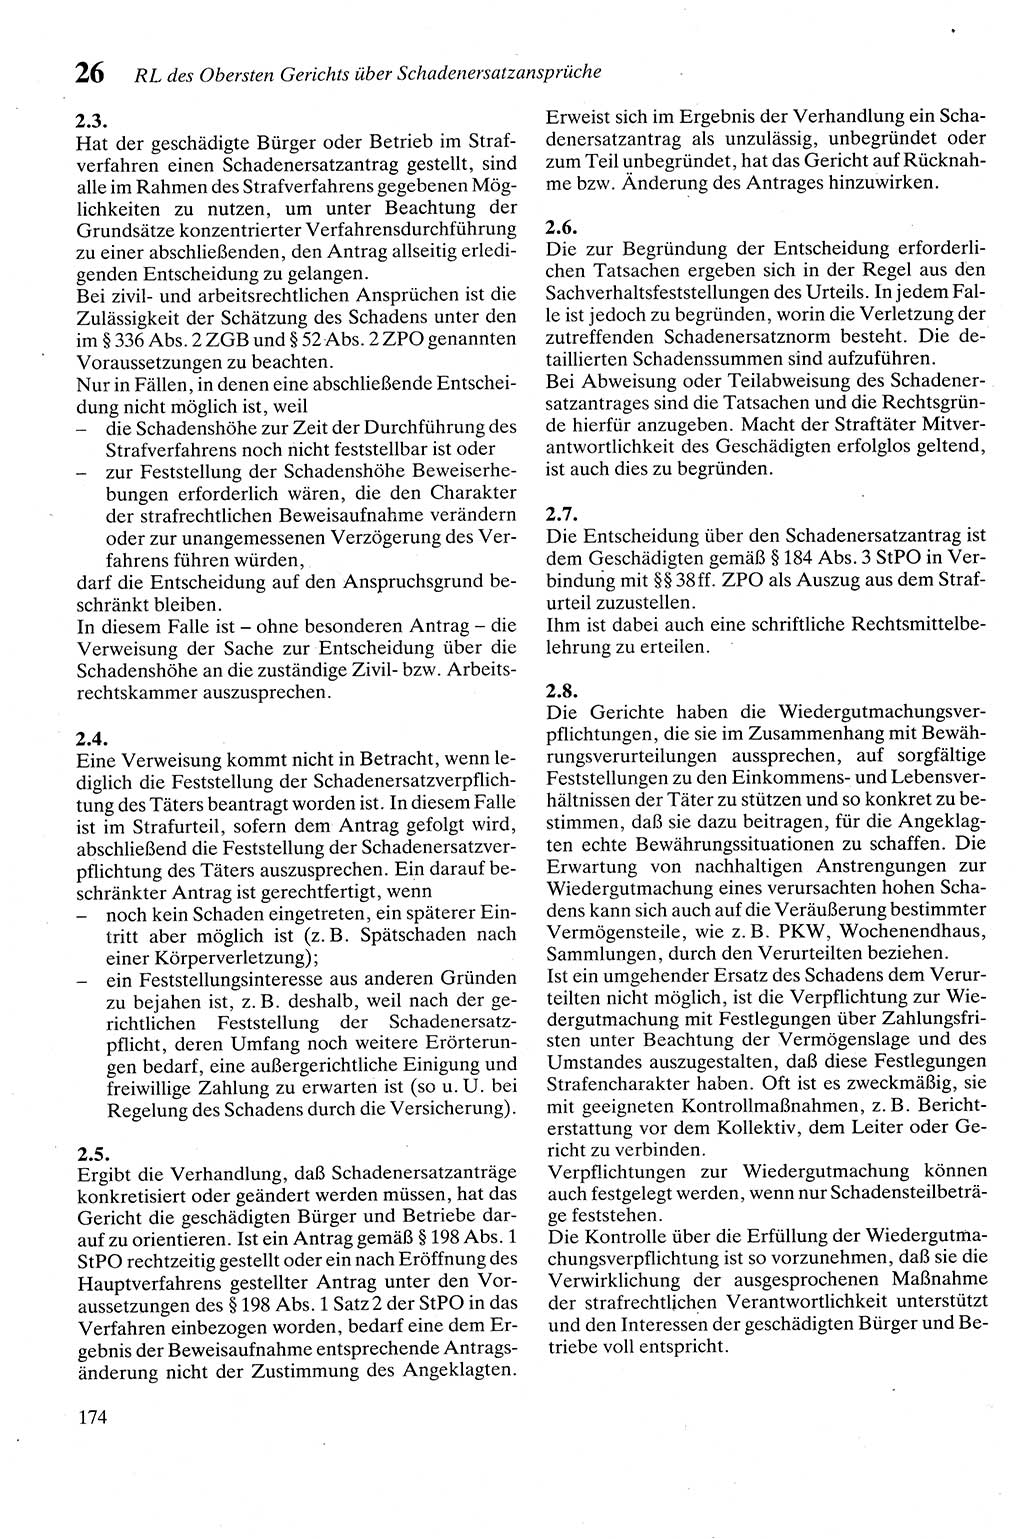 Zivilgesetzbuch (ZVG) sowie angrenzende Gesetze und Bestimmungen [Deutsche Demokratische Republik (DDR)] 1975, Seite 174 (ZGB Ges. Best. DDR 1975, S. 174)